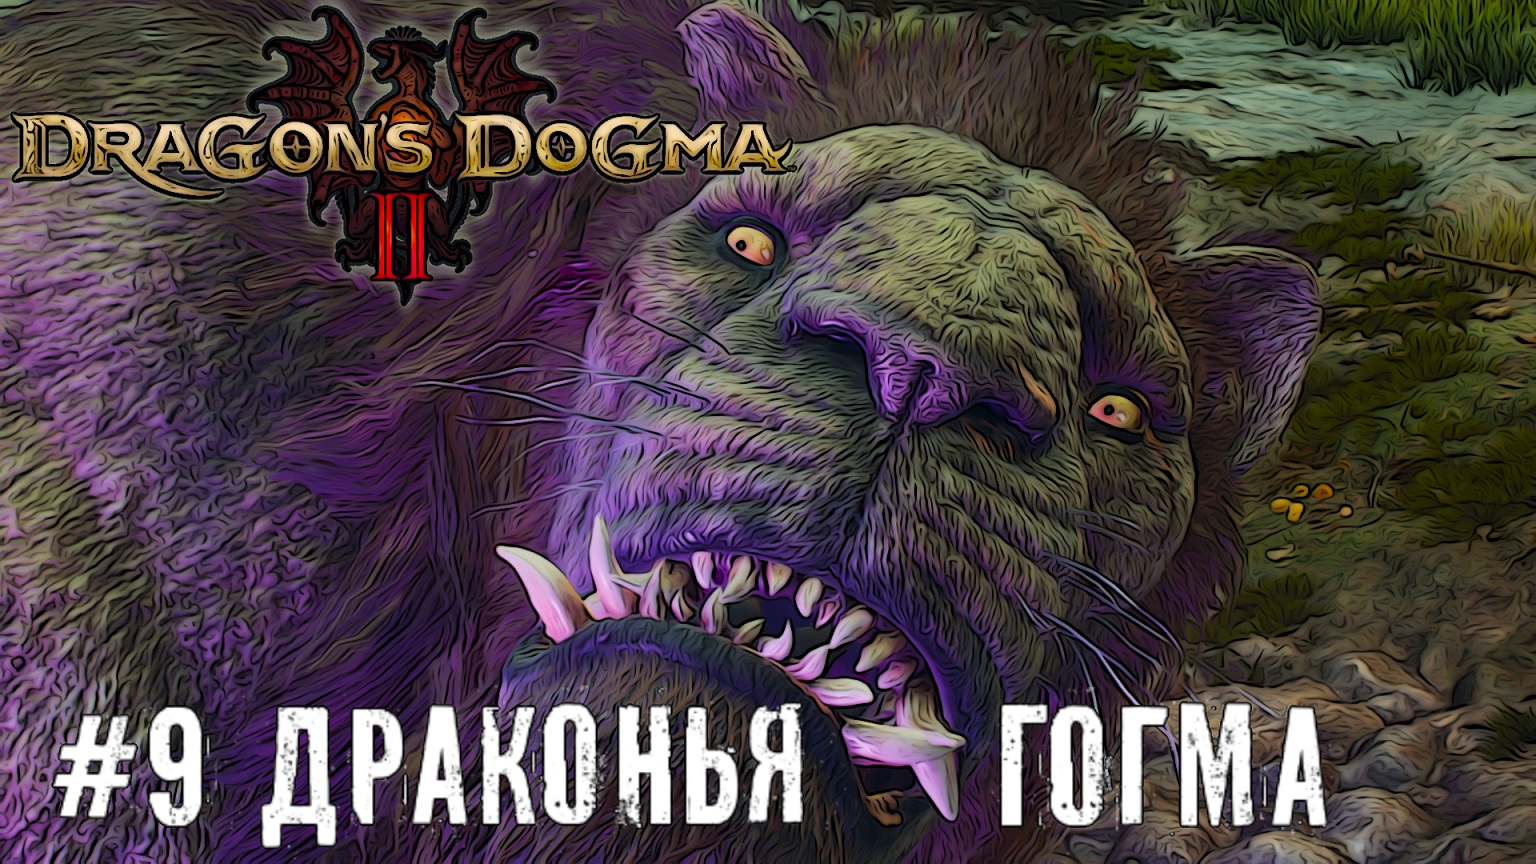 Дракон туда дракон сюда - Dragon’s Dogma 2 прохождение часть #9 #dragonsdogma2